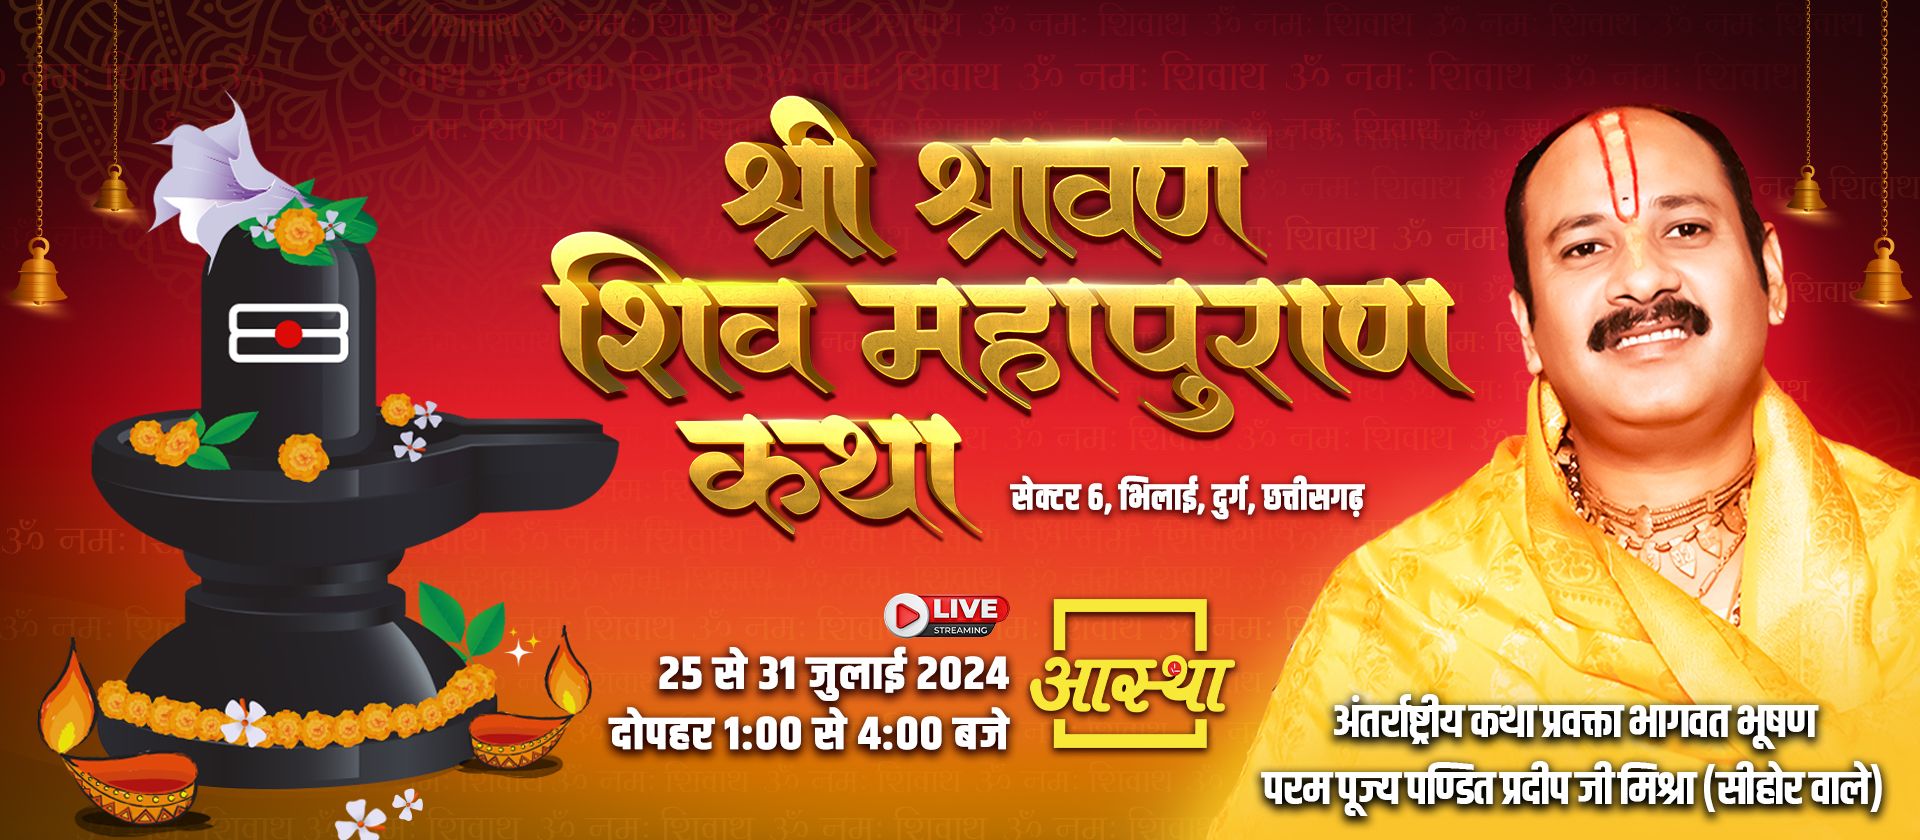 Pujya Sri Pradeep Mishra Ji 25 - 31 july 2024